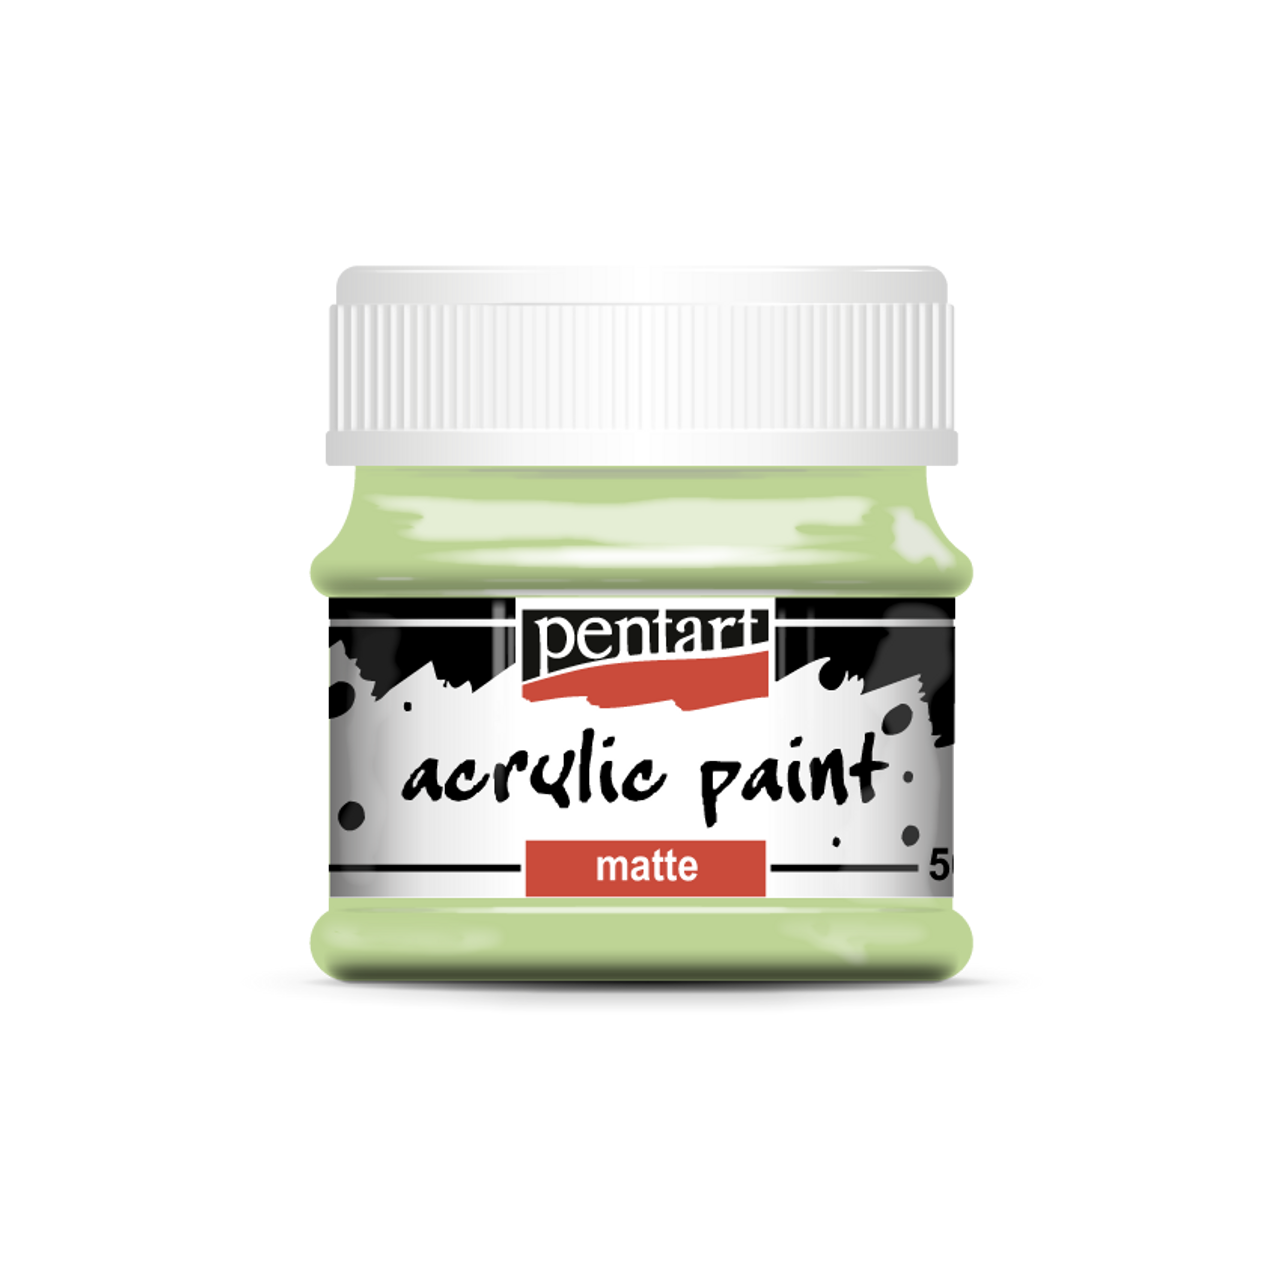 Pentart Acrylic paint matte 50 ml  mojito green